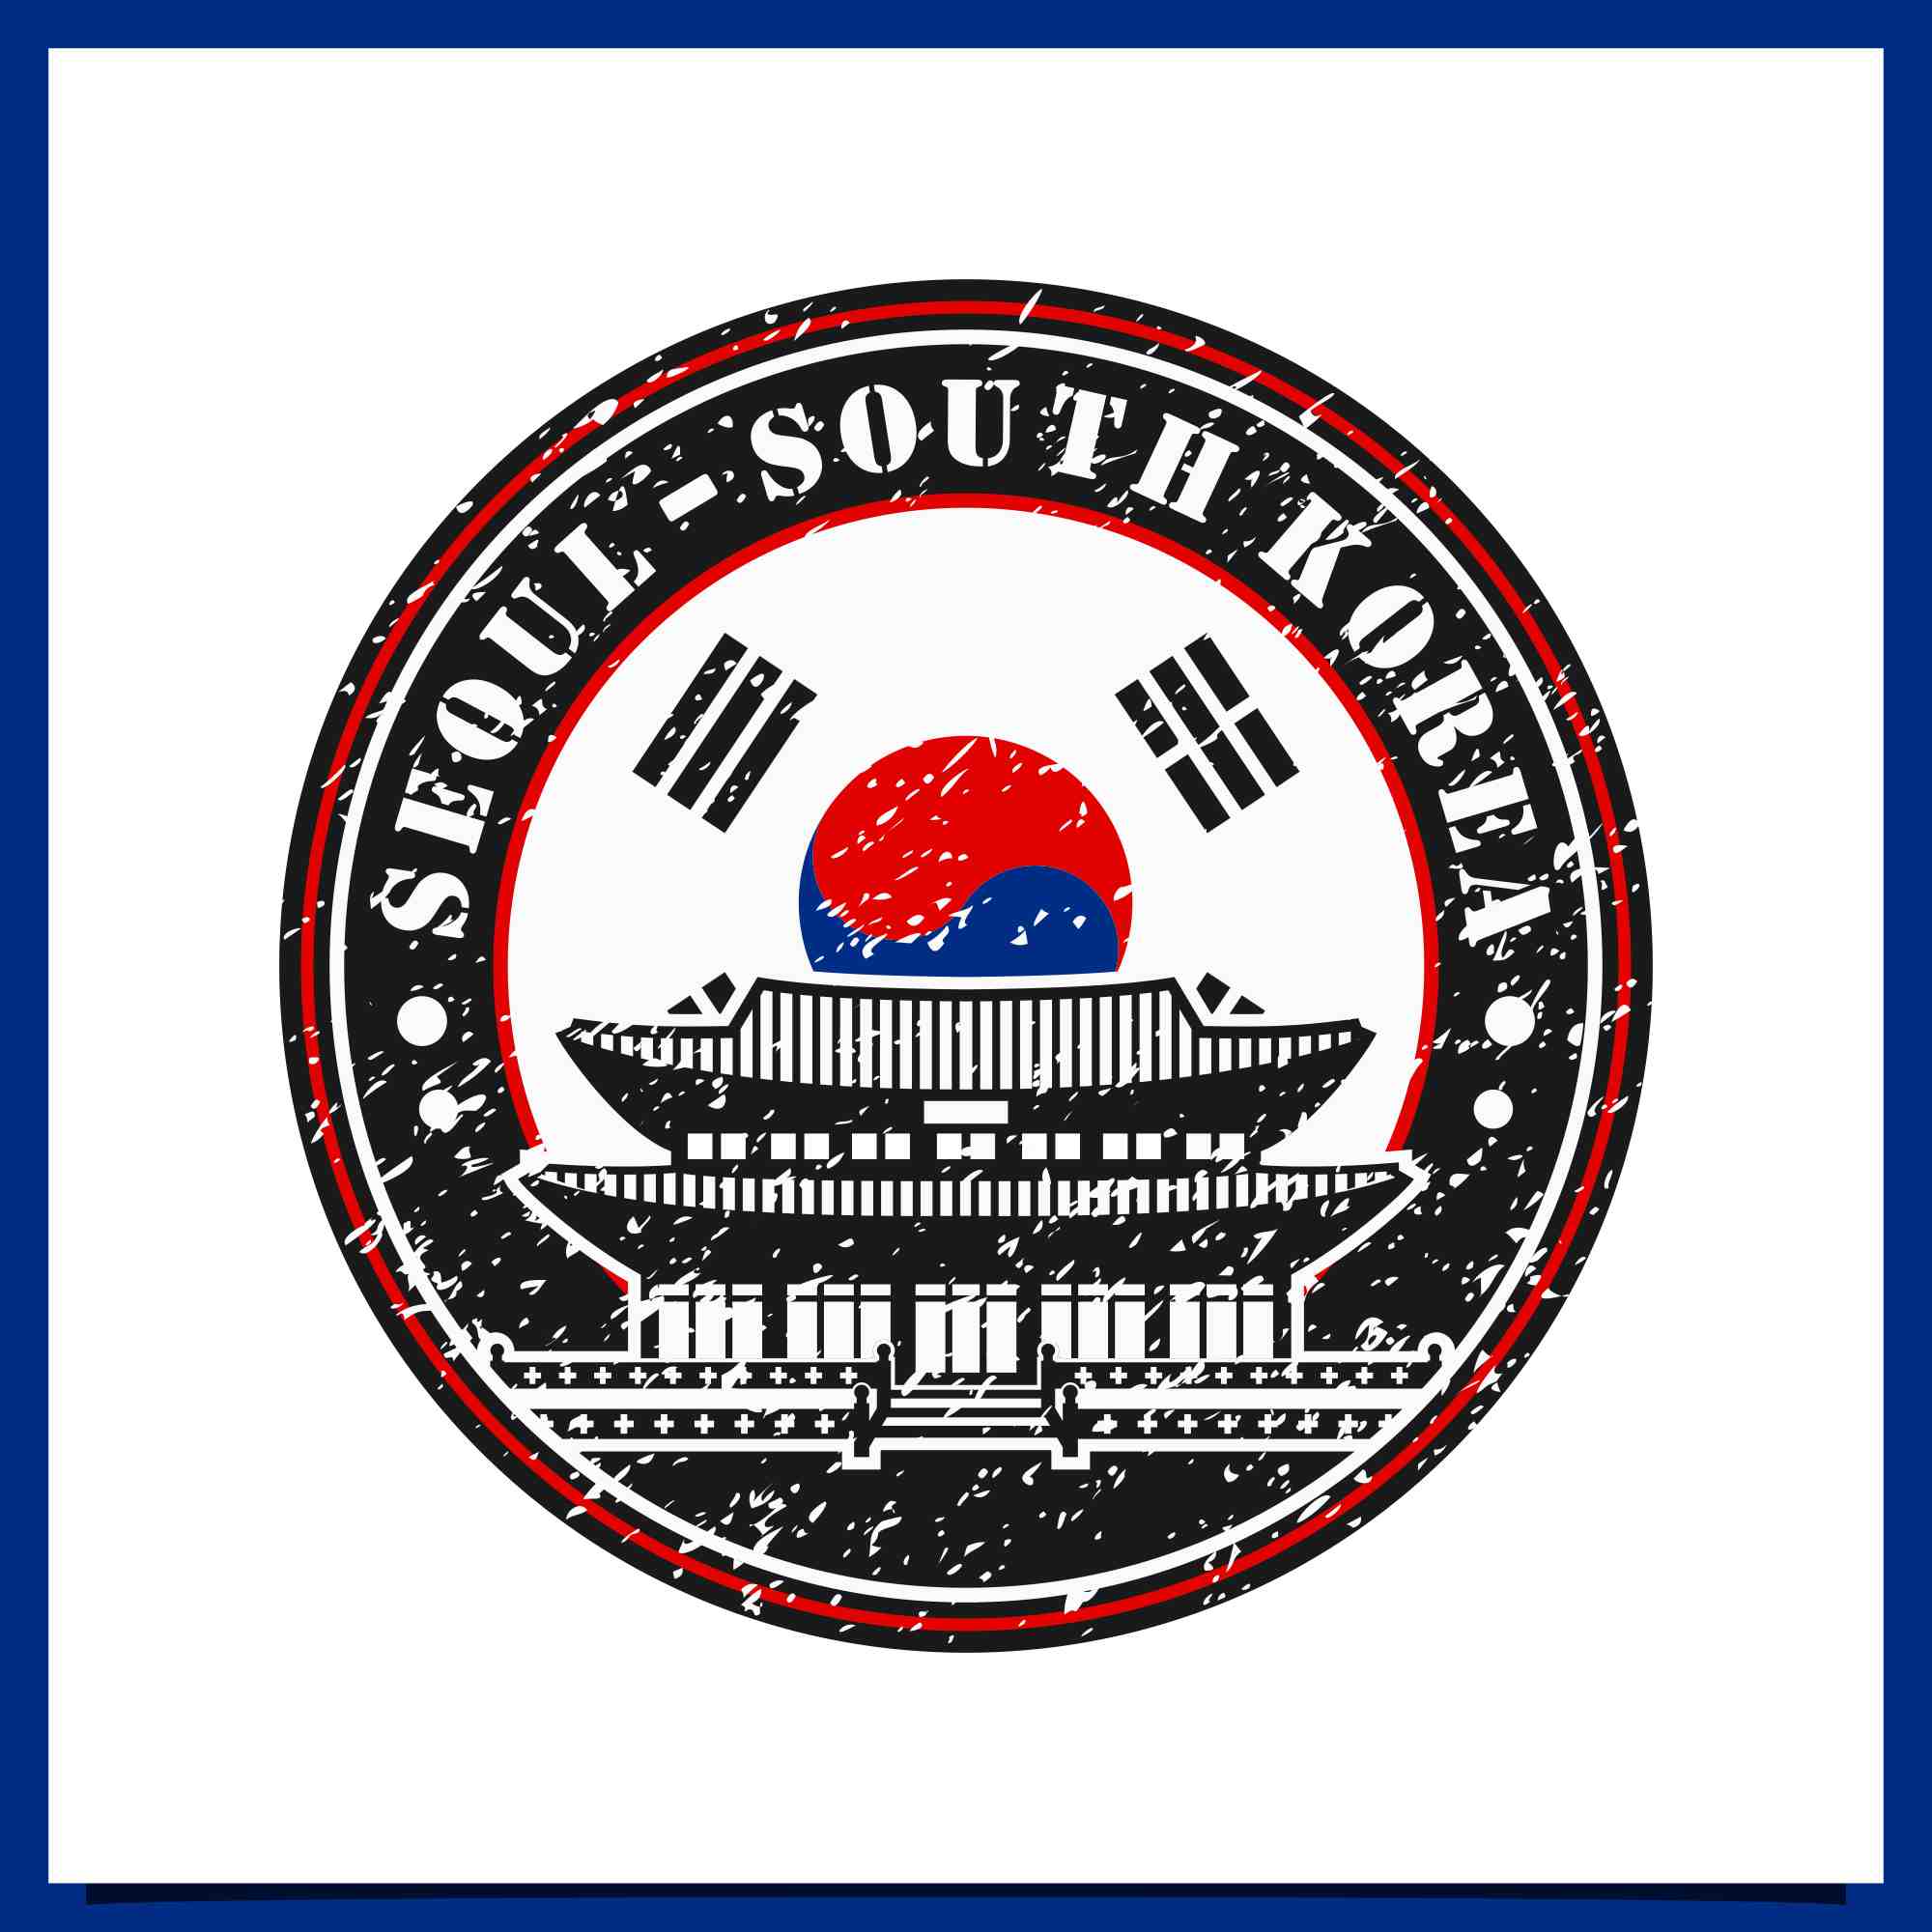 Seoul south korea vector logo design collection - $4 preview image.